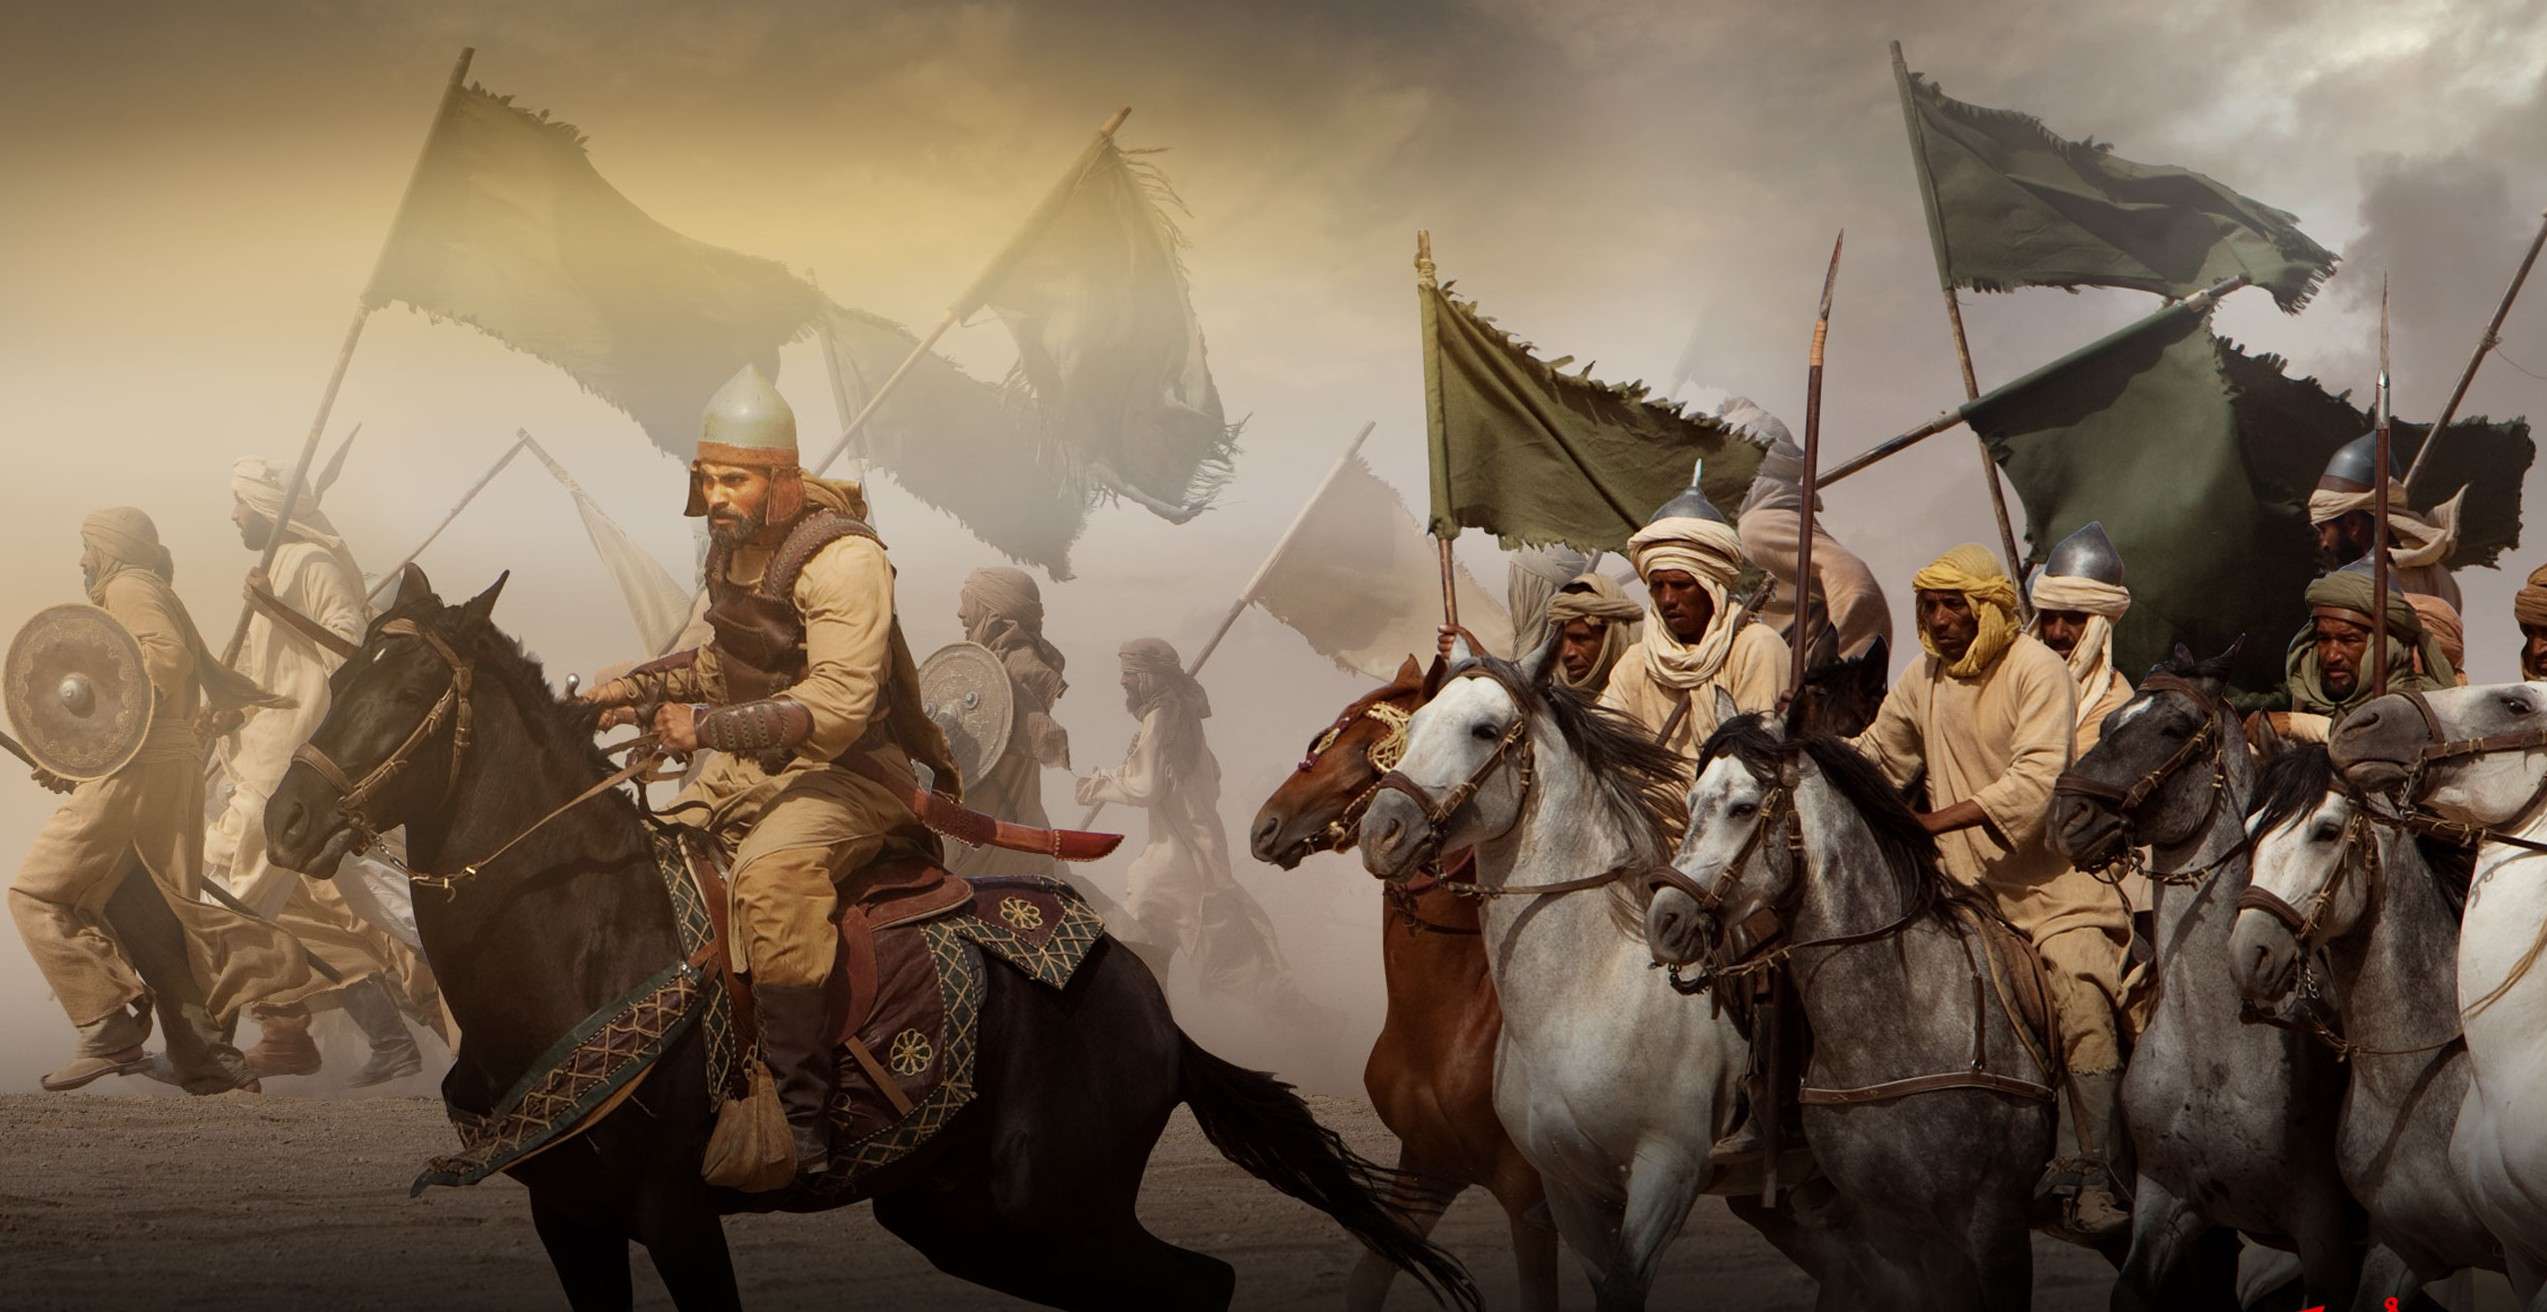 Империя араб. Халид ибн Валид битва при Бадре. Арабский воин Халид ибн Валид. Арабское завоевание Персии. Битва при Бадре 7 век.